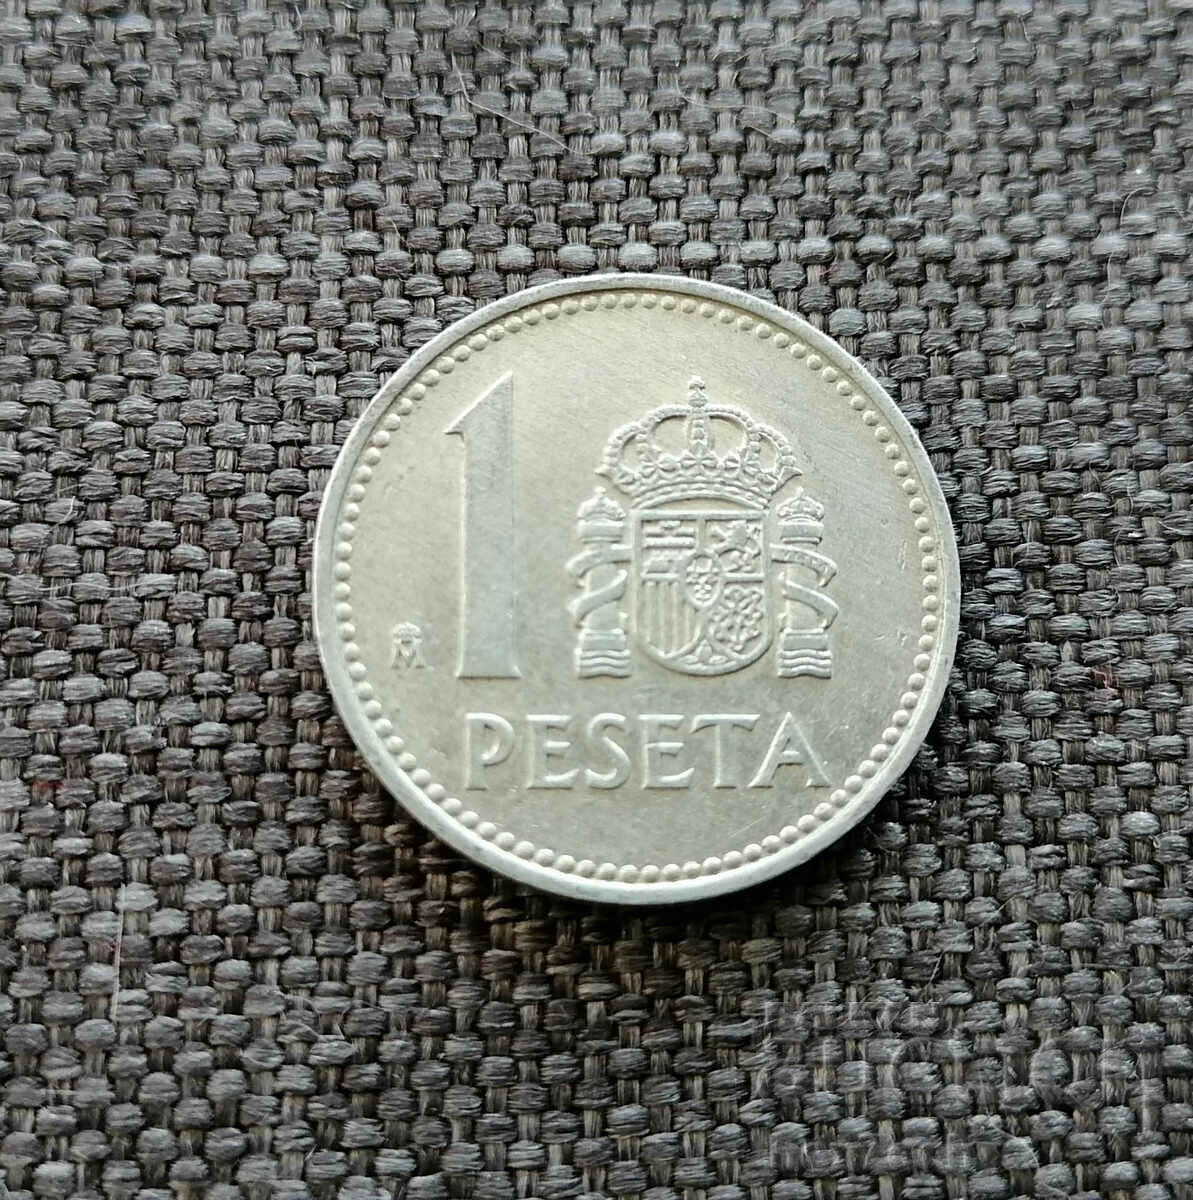 ❤️ ⭐ Spain 1986 1 peseta ⭐ ❤️